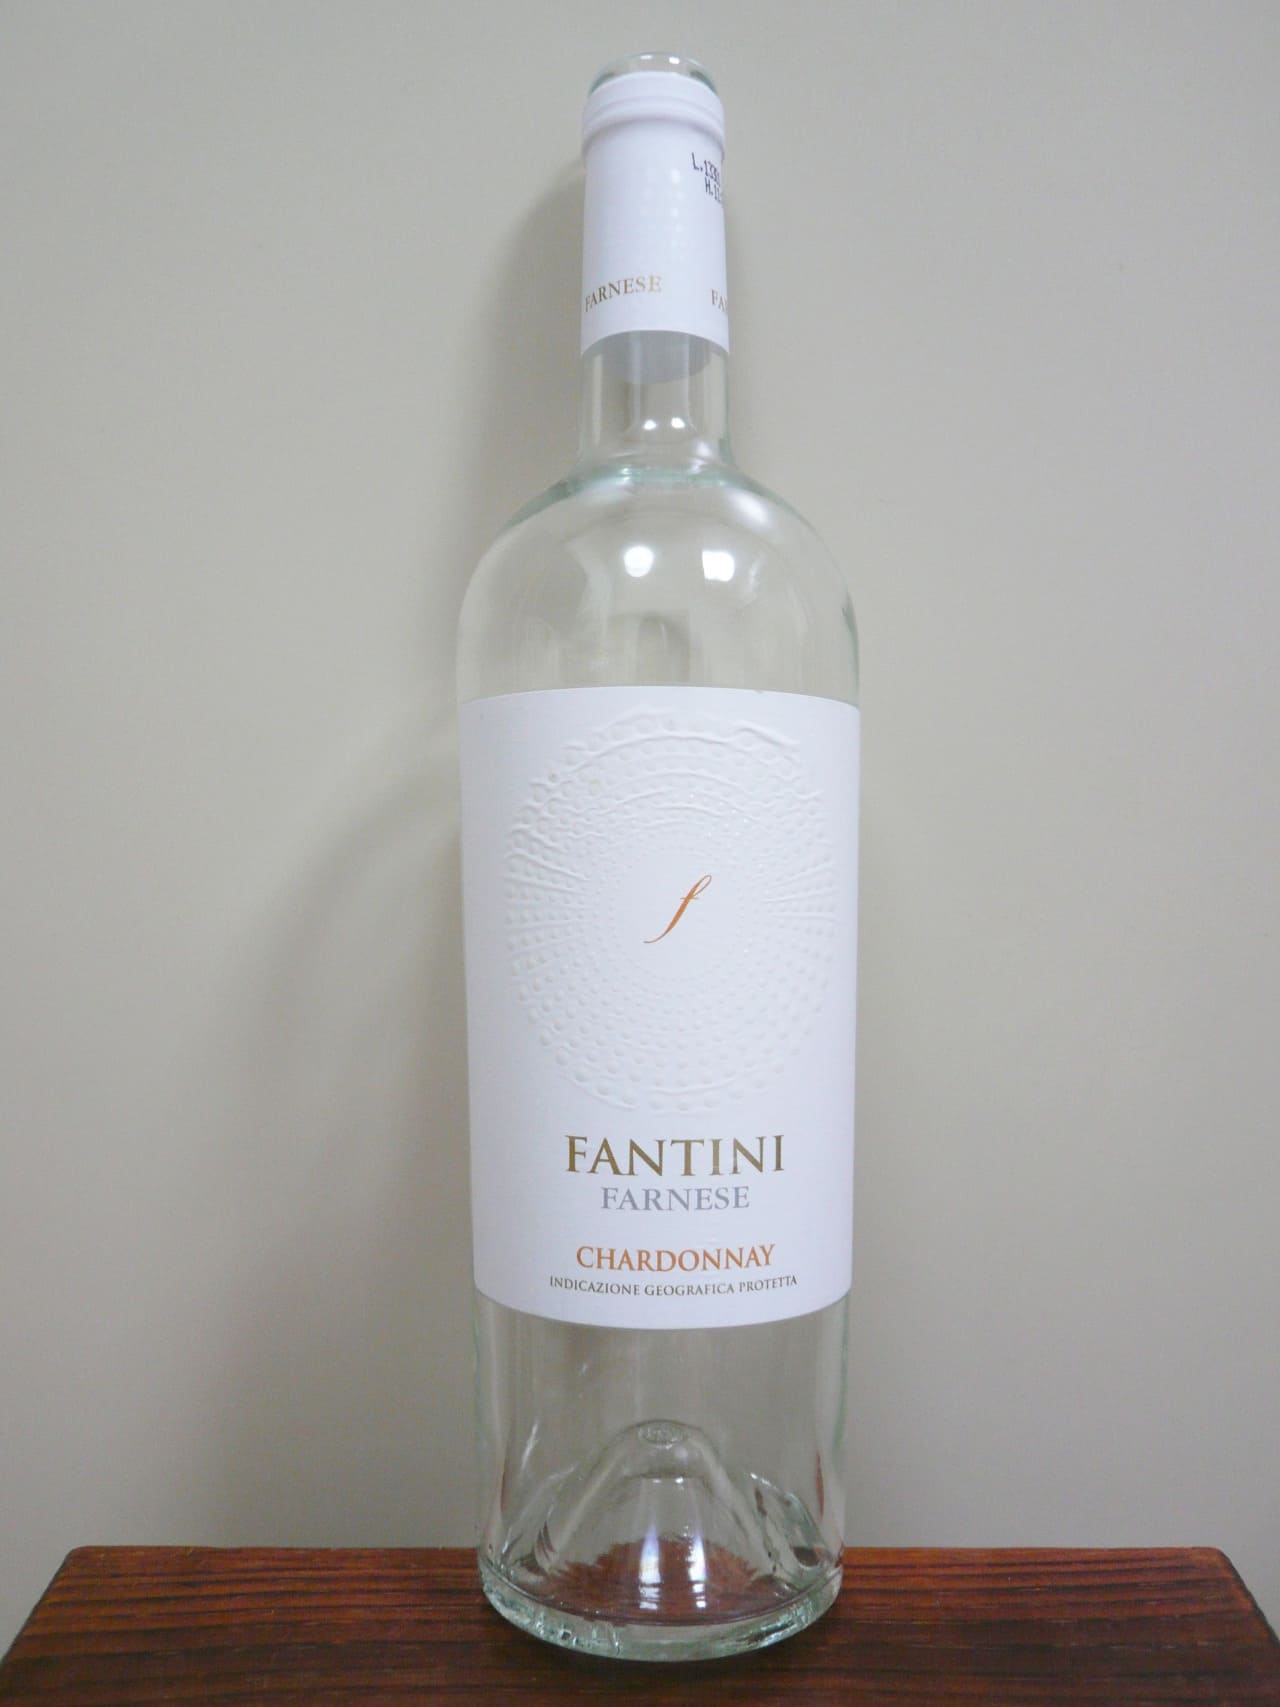 Farnese Fantini Chardonnay